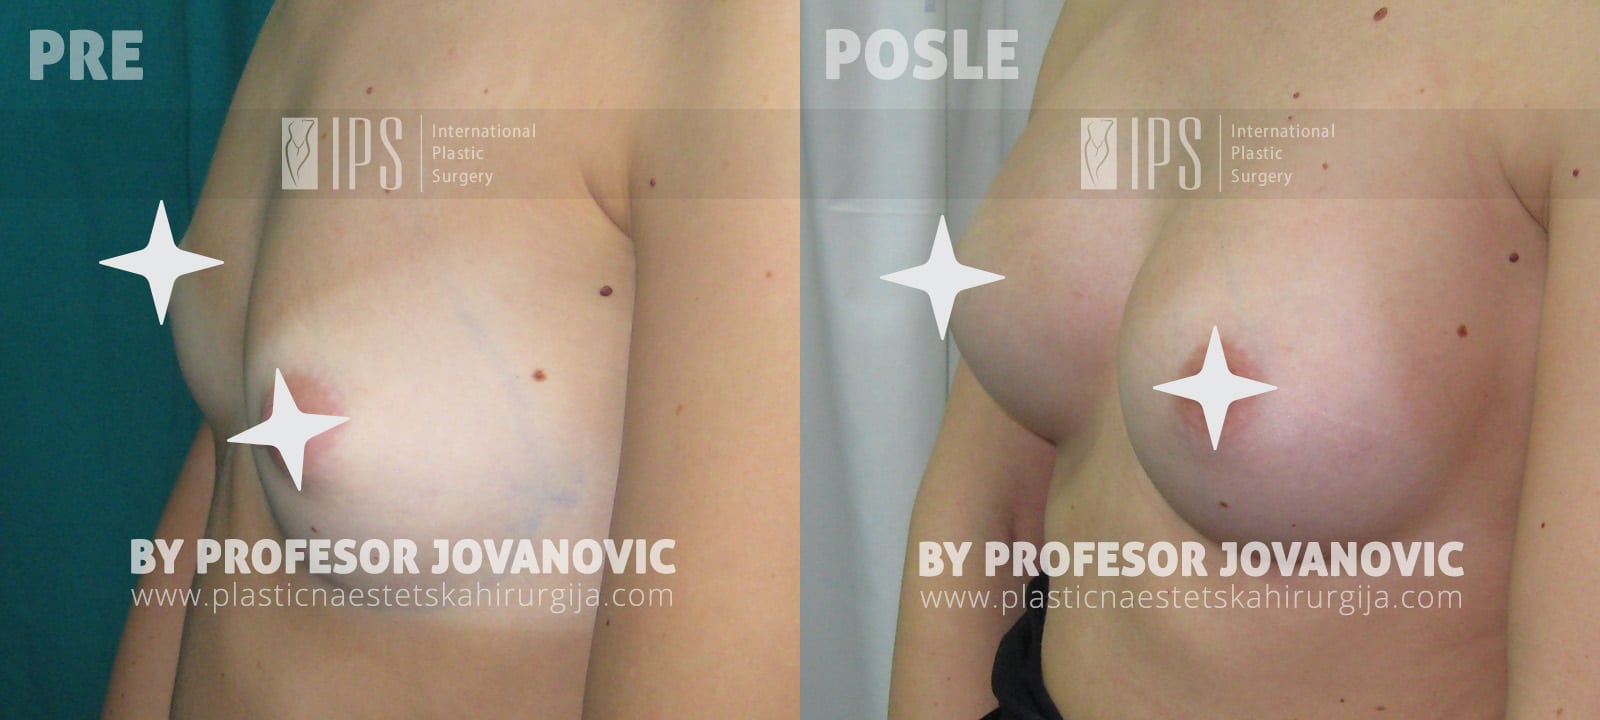 Povećanje grudi anatomskim implantima - pre i posle, levi polubok